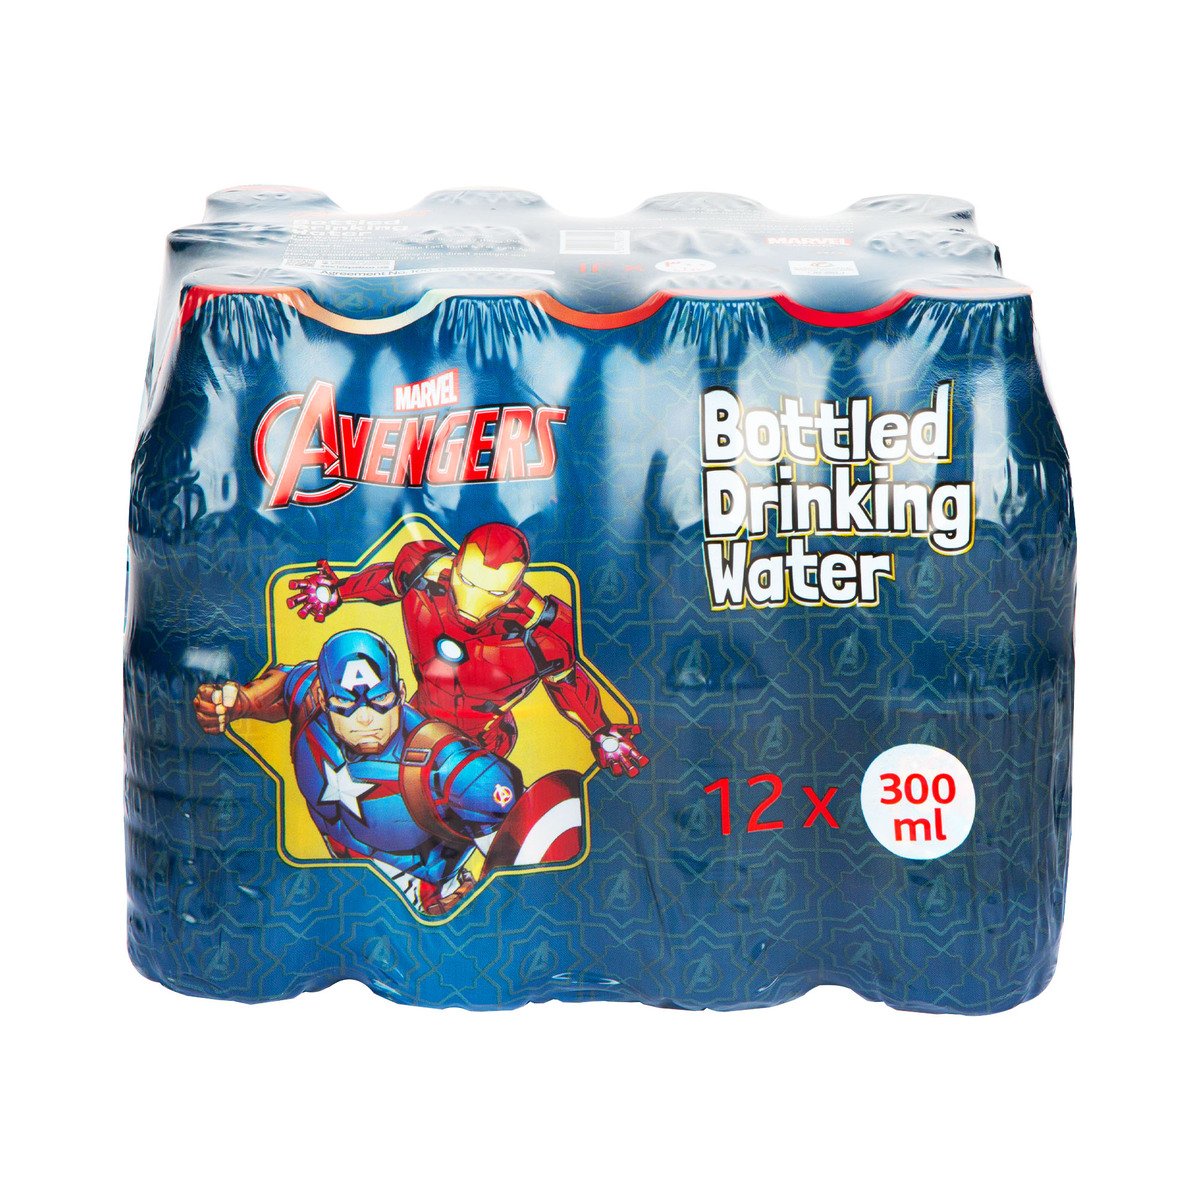 Marvel Avengers Bottled Drinking Water 12 x 300 ml